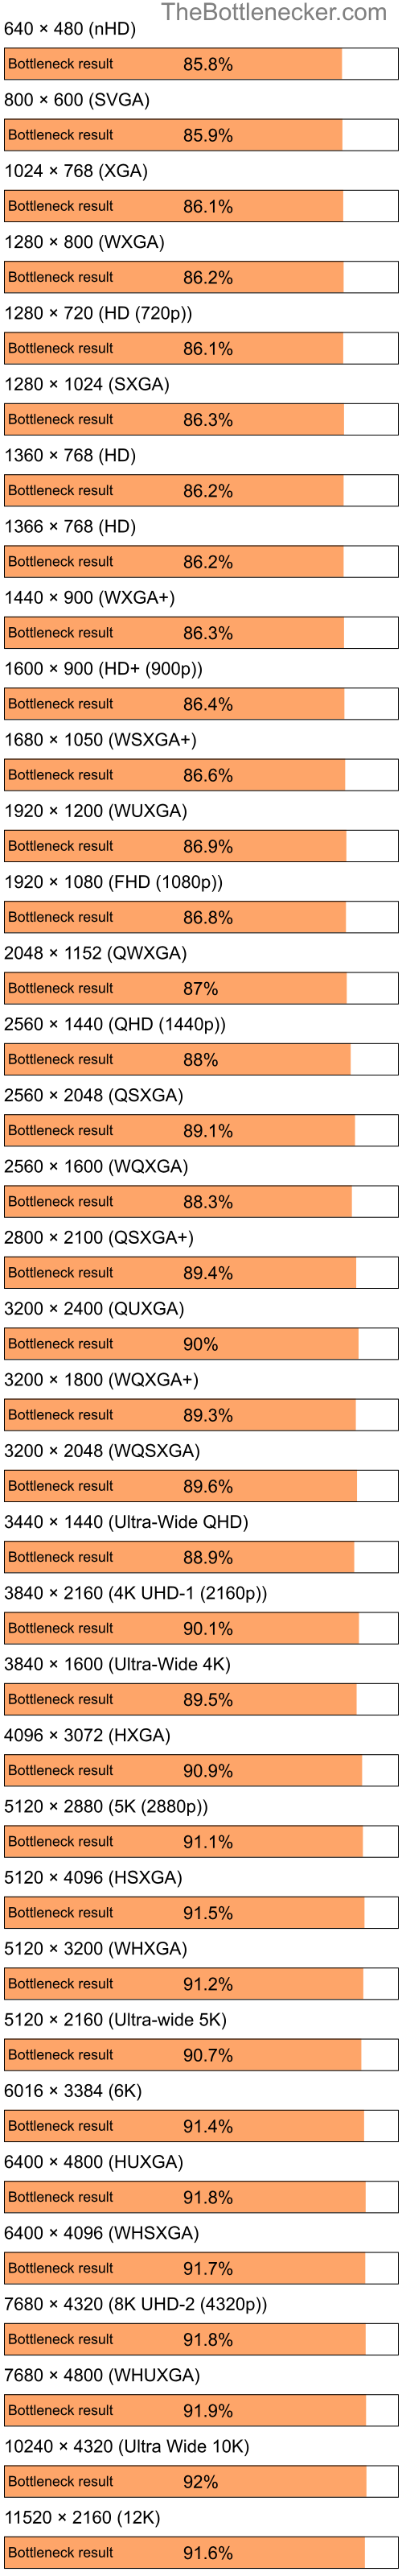 Bottleneck results by resolution for Intel Celeron and NVIDIA GeForce FX 5500 in General Tasks